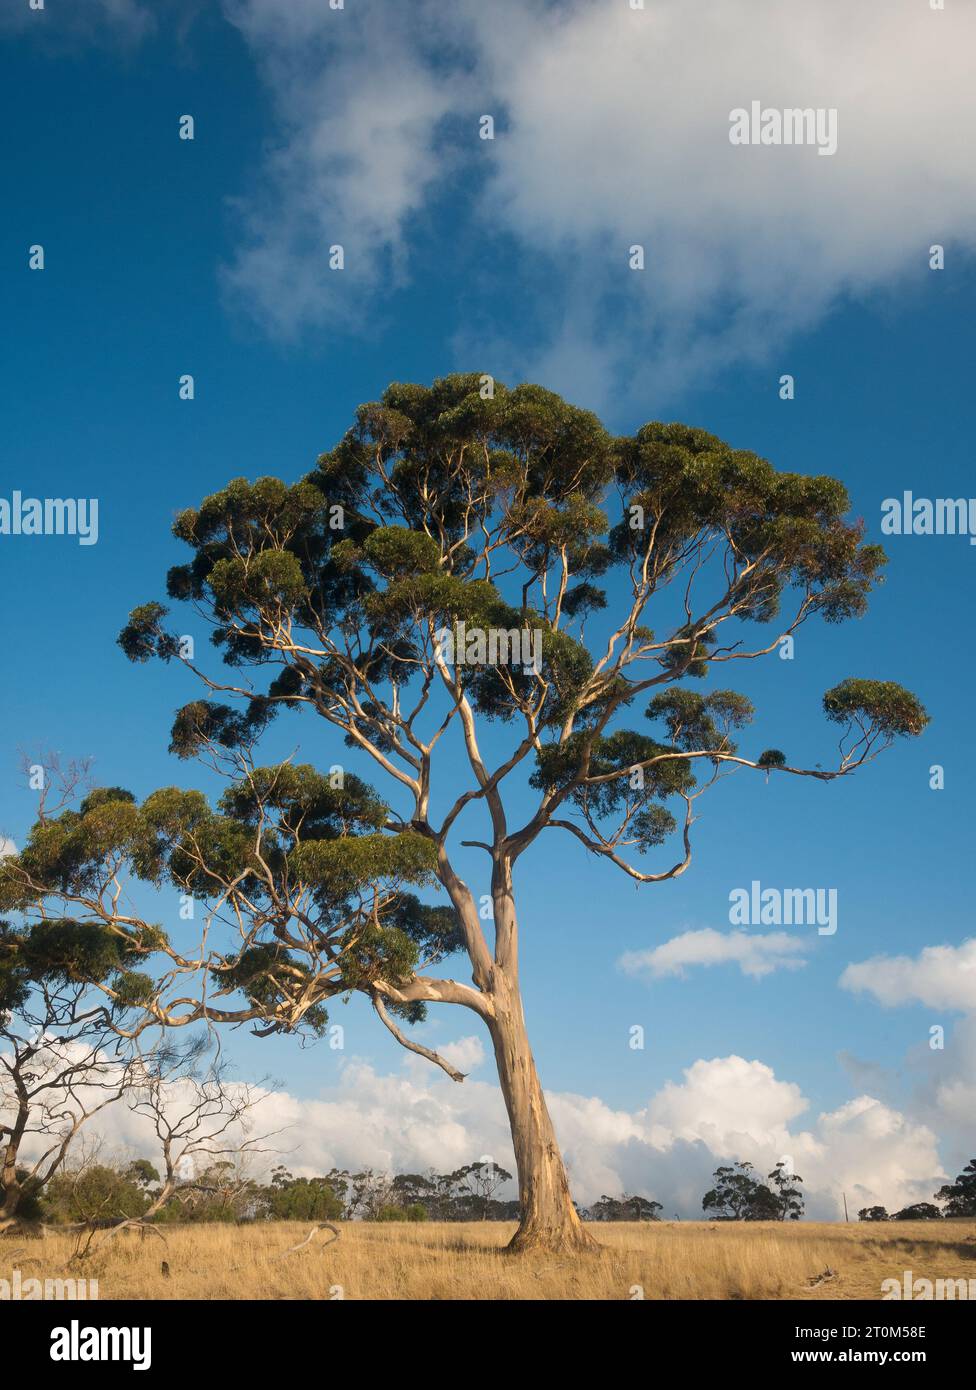 Grand arbre de gomme se dresse majestueusement contre le ciel bleu et les nuages blancs dans le paysage australien. Banque D'Images